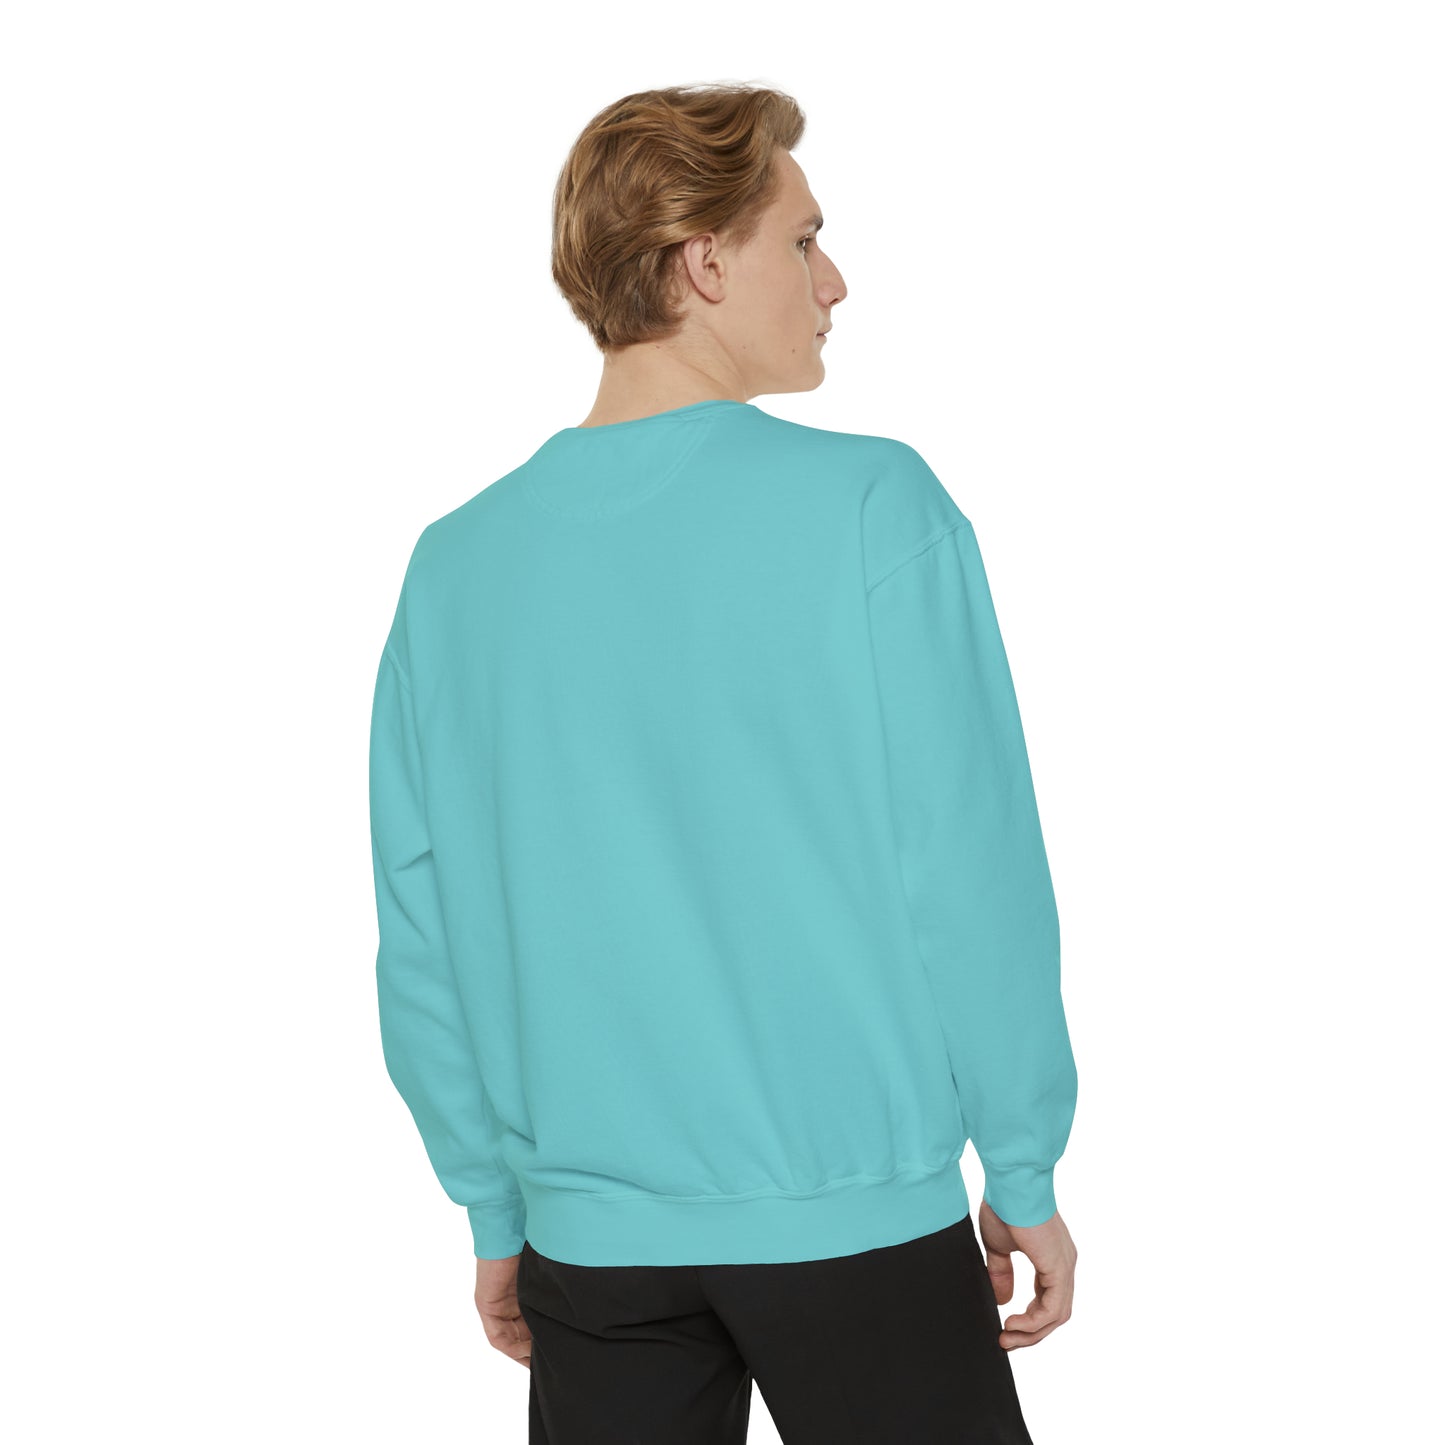 LUCKY Unisex Garment-Dyed Sweatshirt